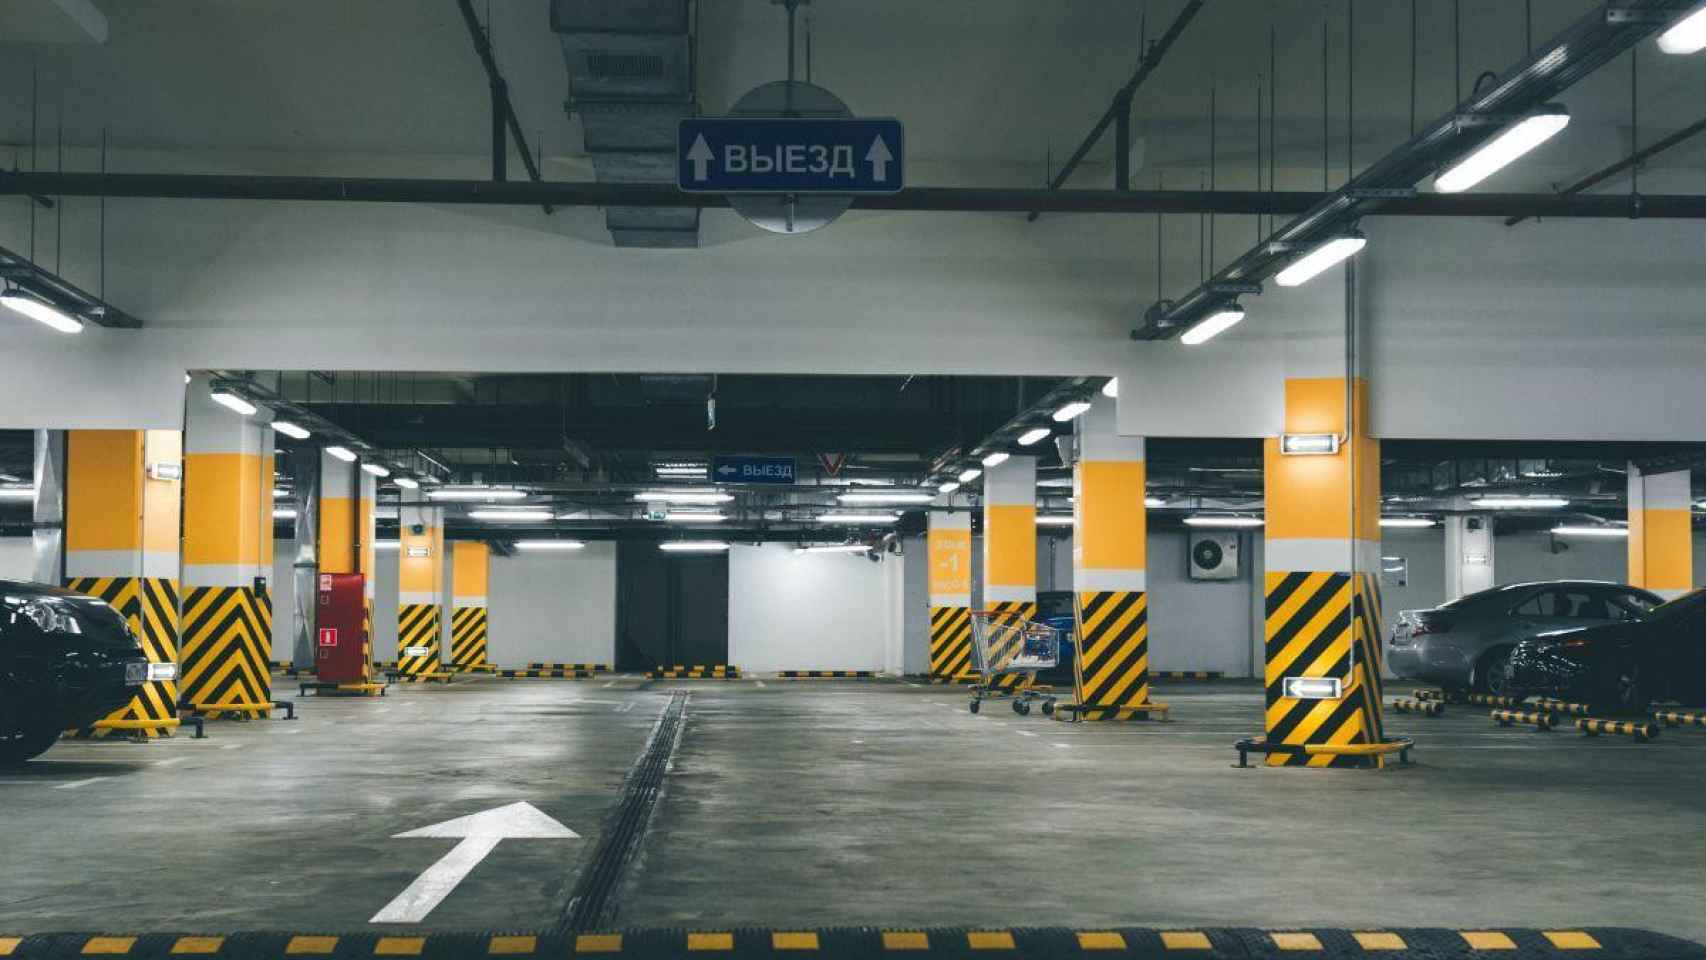 Parking subterráneo